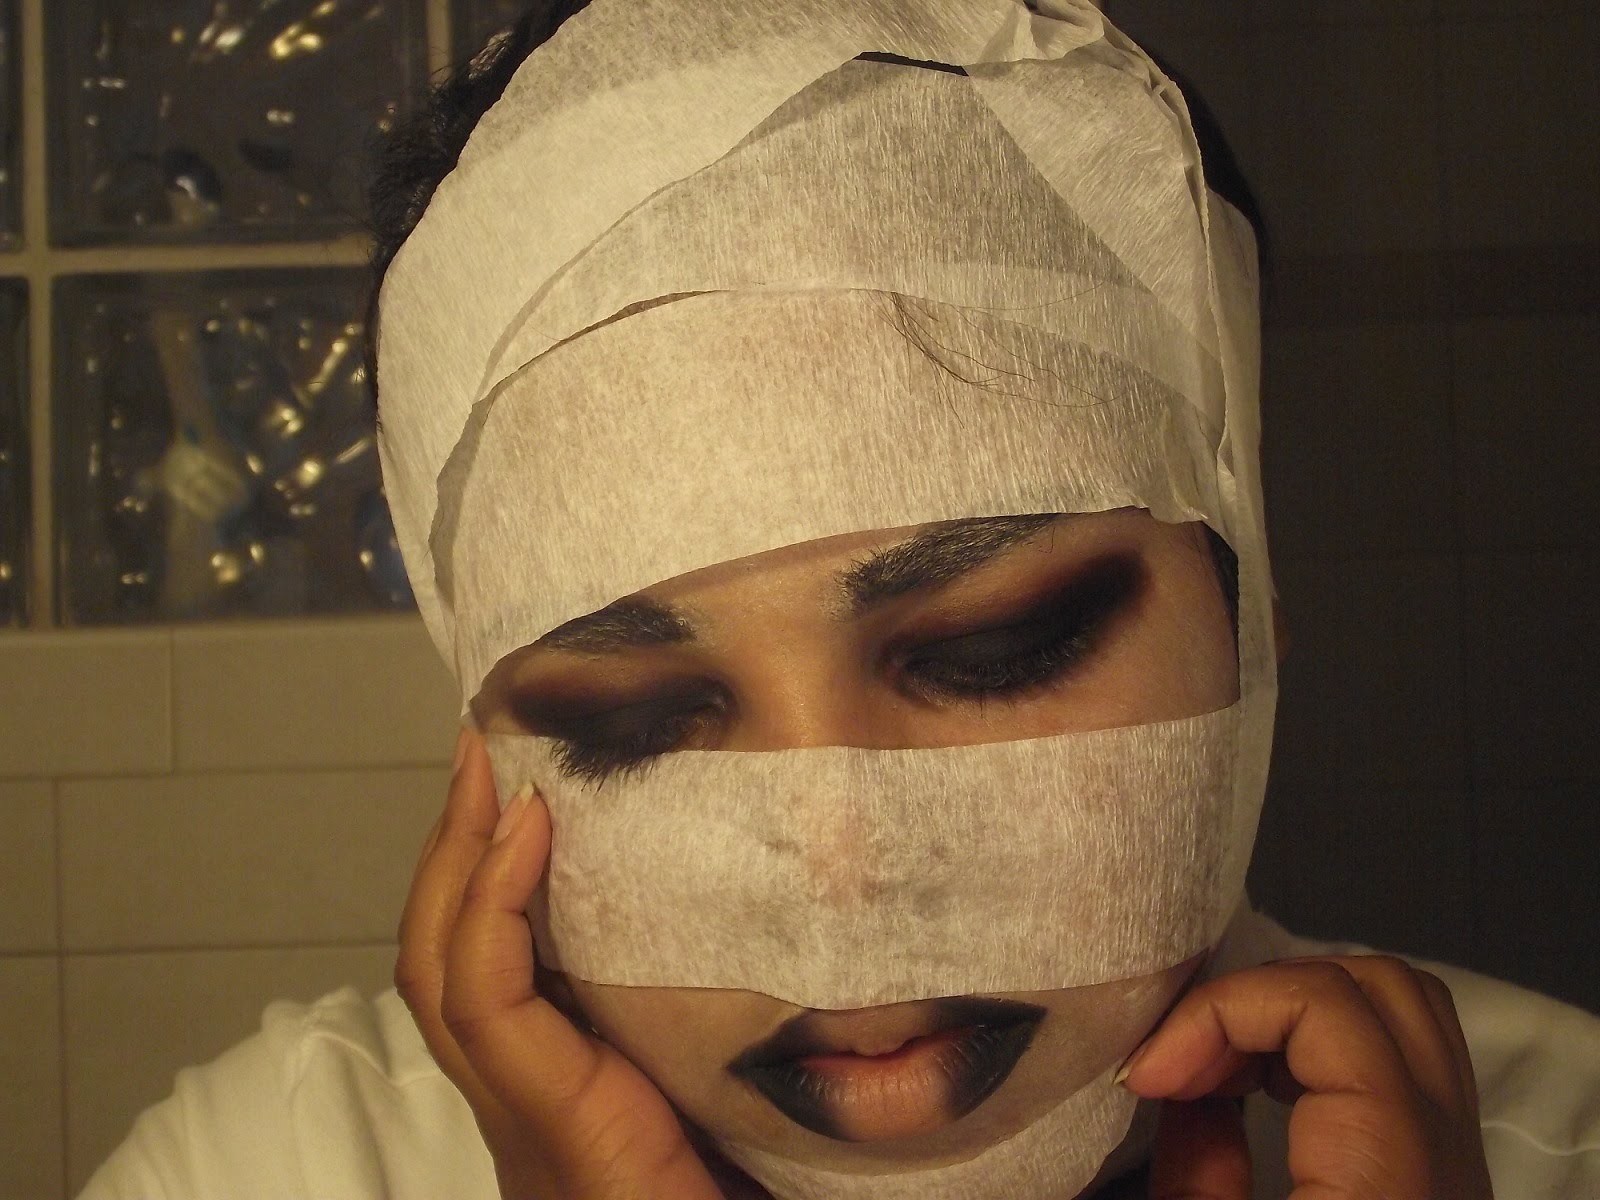 DIY Mummy Costume and Makeup Tutorial.